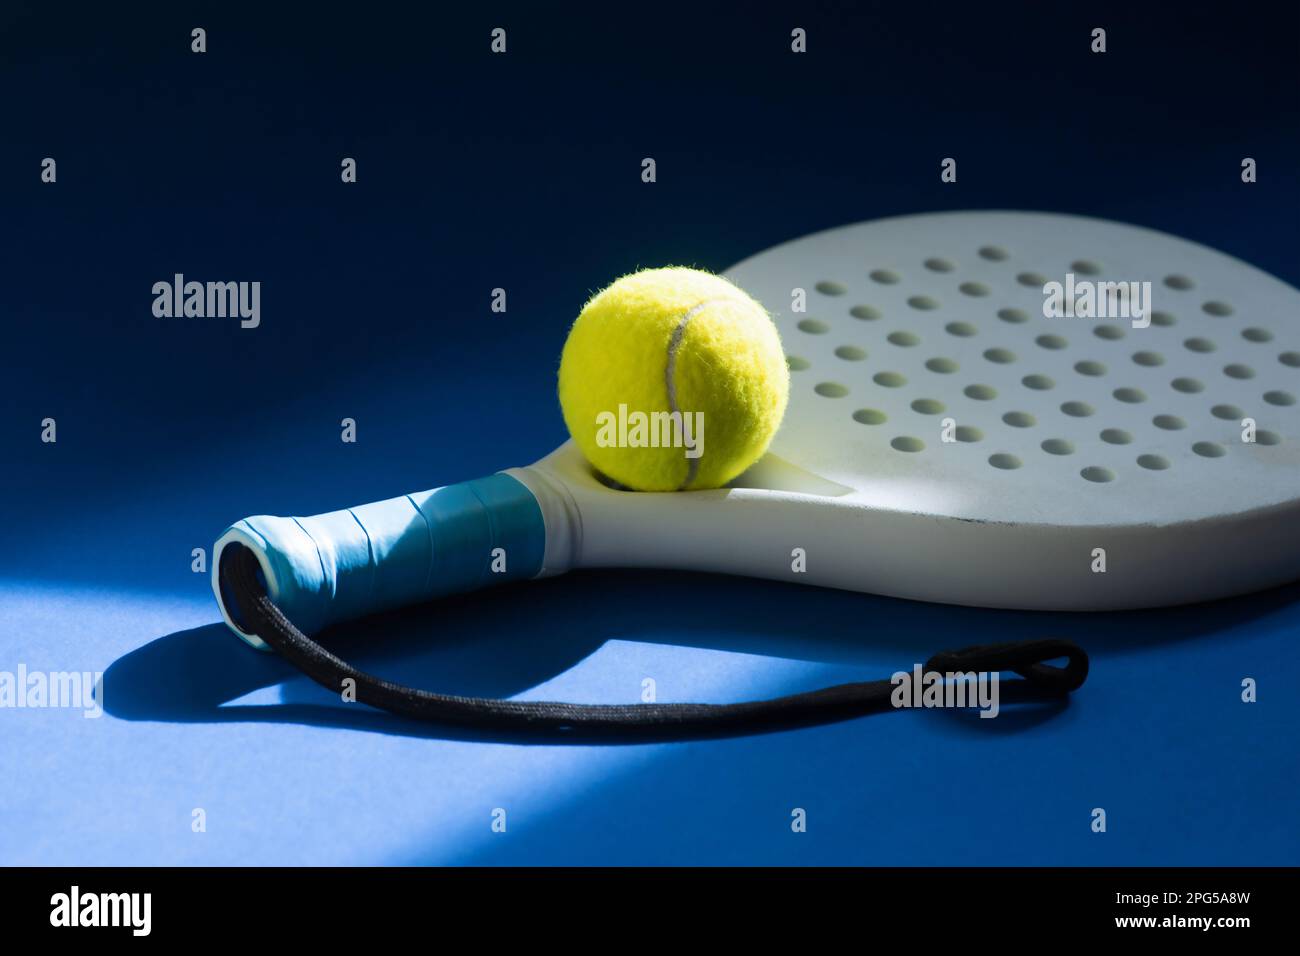 Raquette de paddle-tennis professionnelle blanche et balle jaune avec éclairage naturel sur fond bleu. Affiche horizontale sur le thème du sport, cartes de vœux, tête Banque D'Images